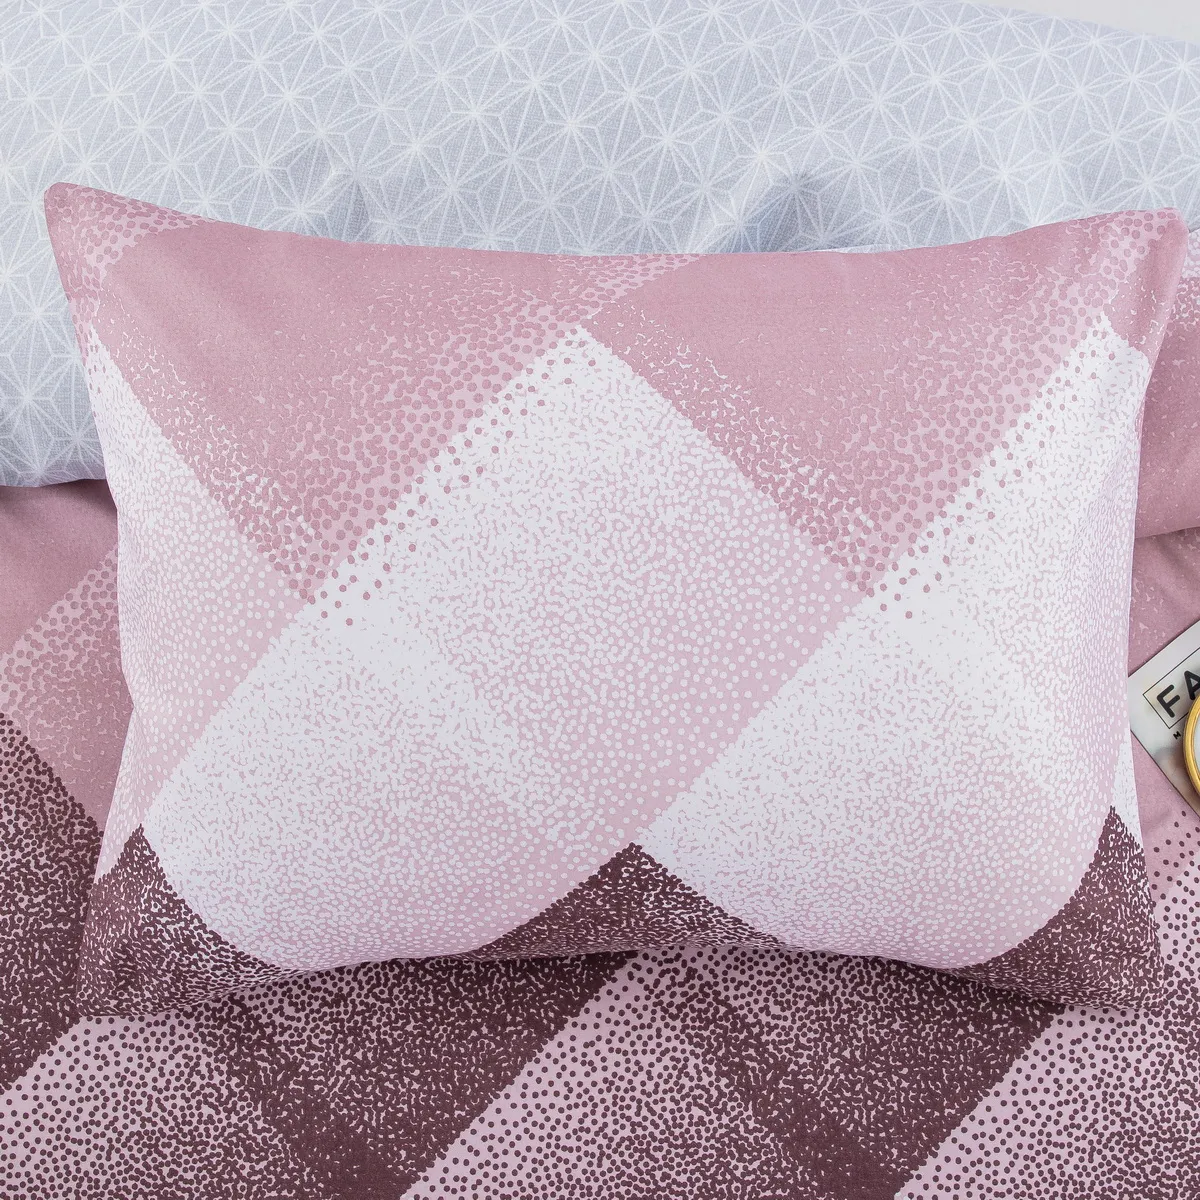 2/3 piezas de ropa de cama con patrón a cuadros cómodo y suave tartán big image 1